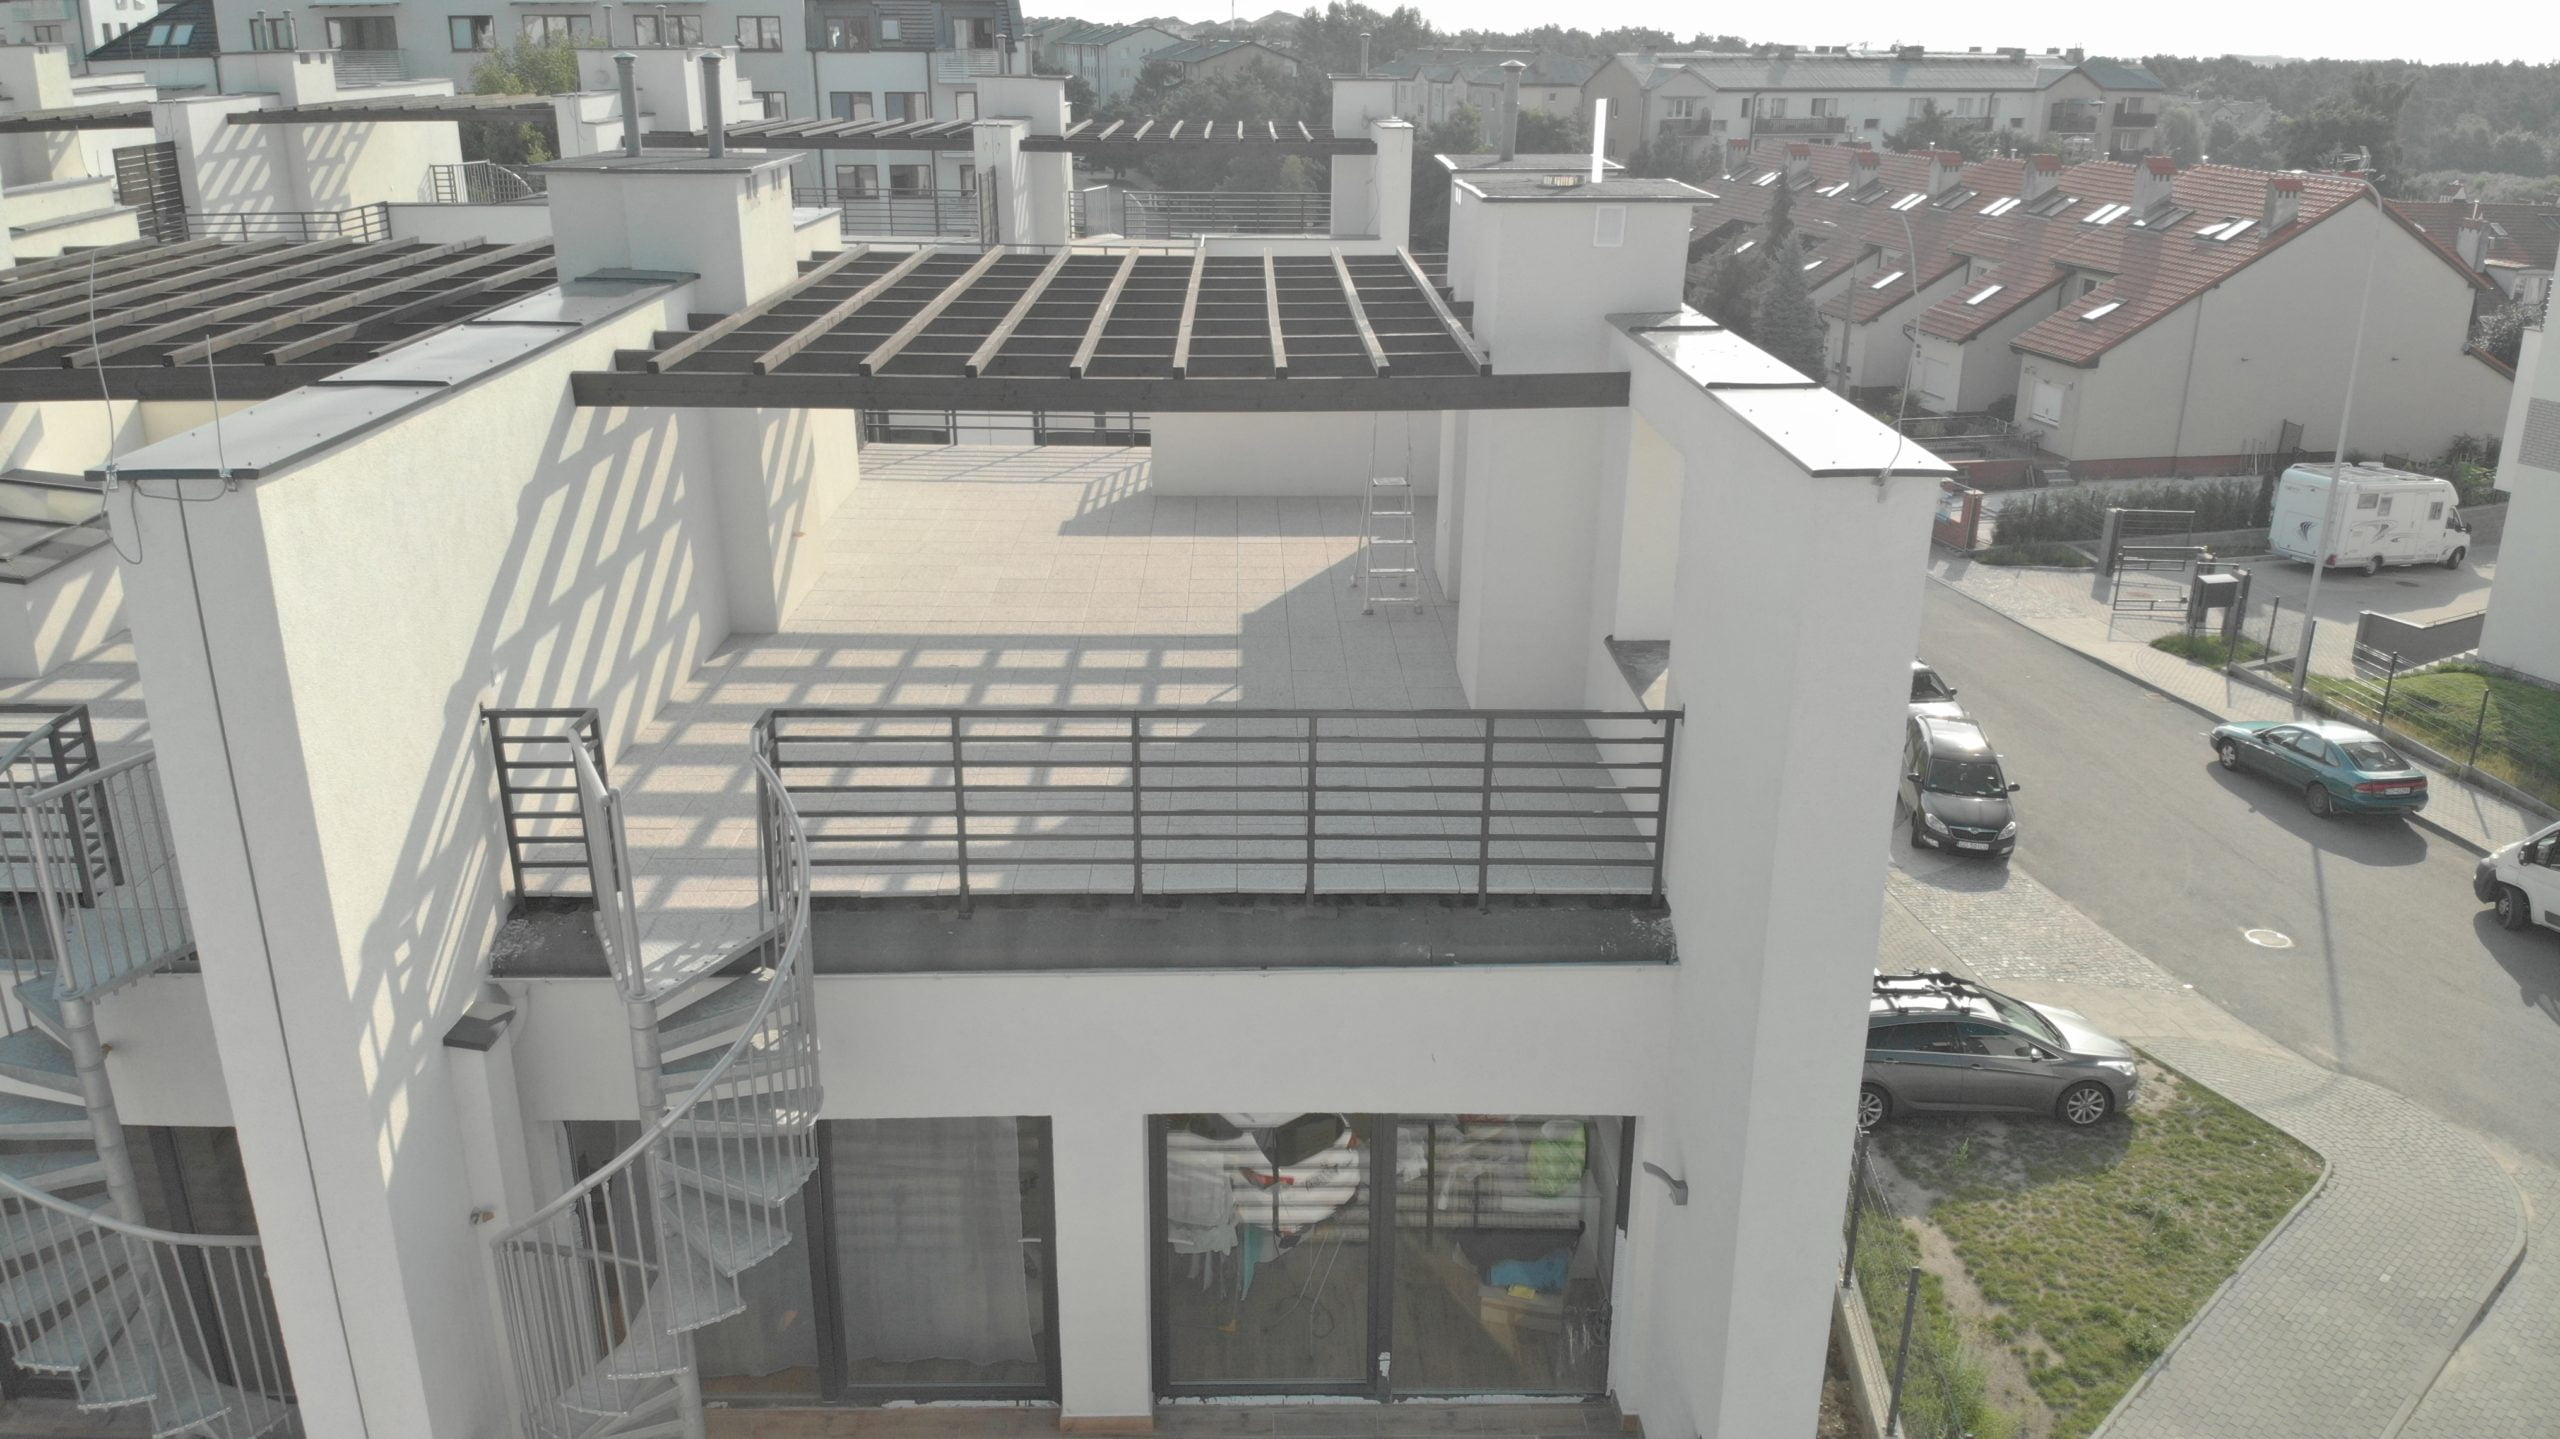 Terrasse mit Keramikplatten auf dem Dach des Gebäudes